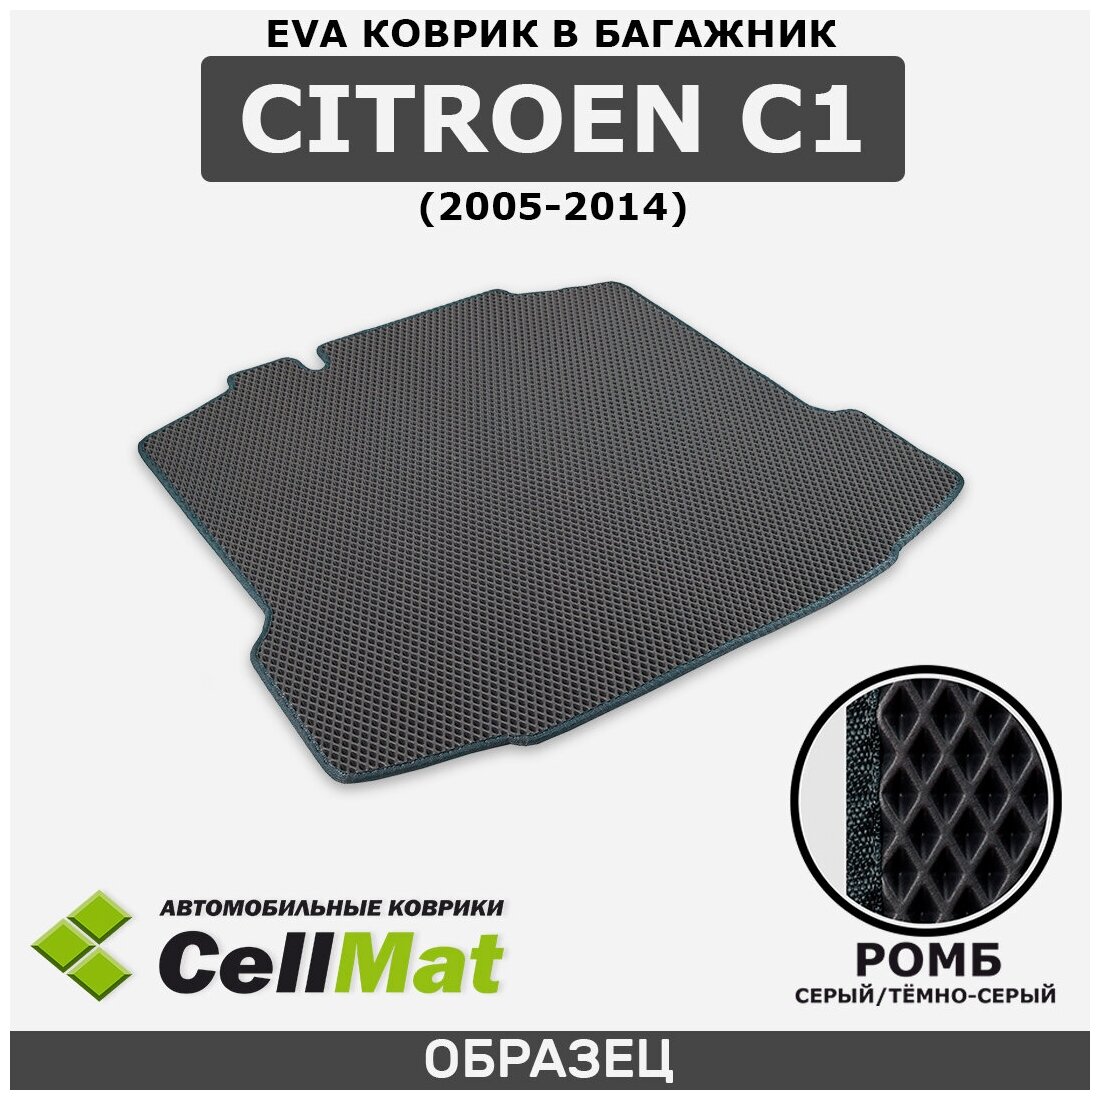 ЭВА ЕВА EVA коврик CellMat в багажник Citroen C1, Ситроен C1, 2005-2014